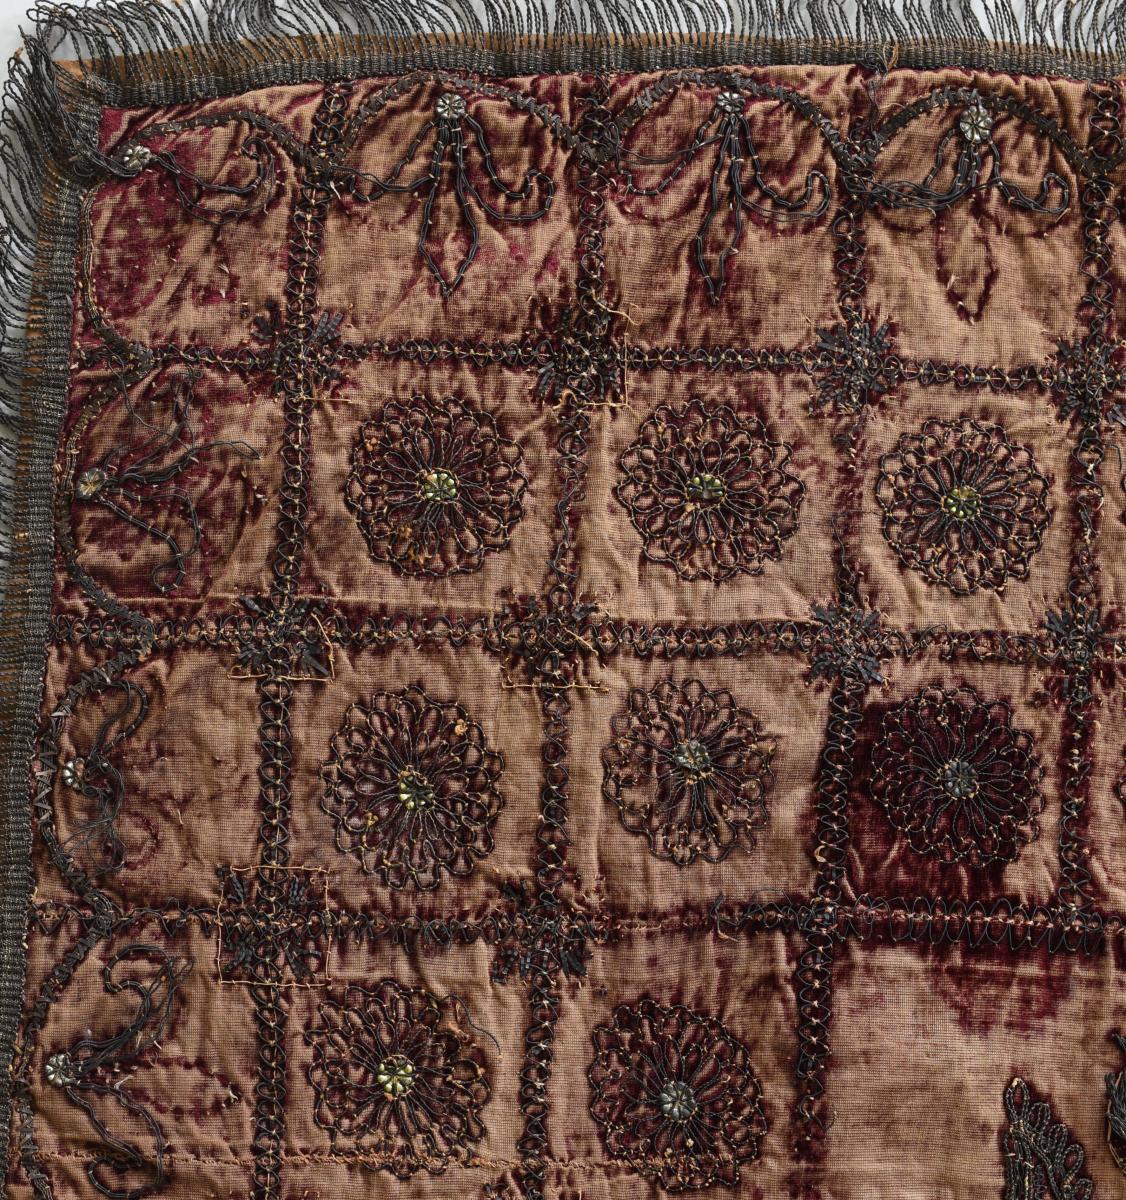 17th century Textile